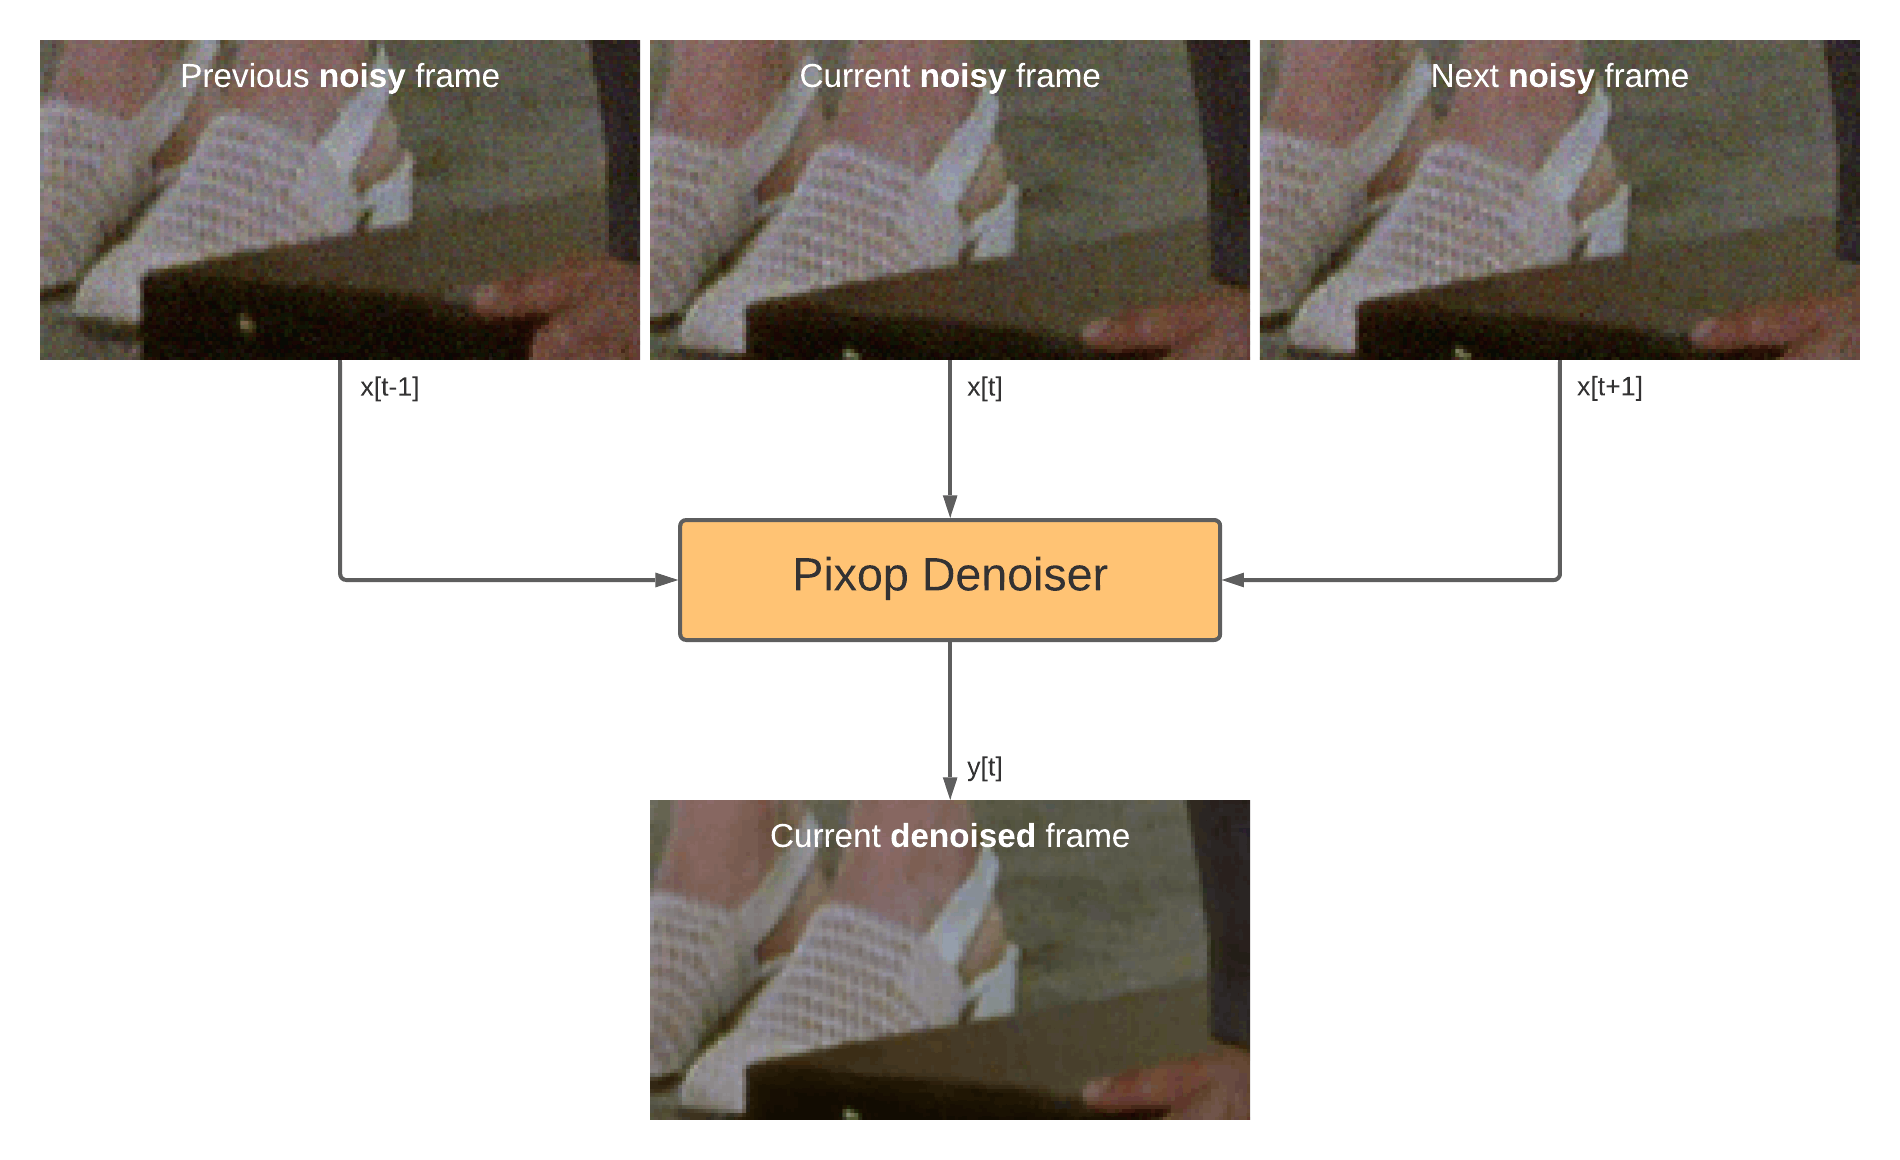 The steps involved in denoising a frame using Pixop's denoise filter. 